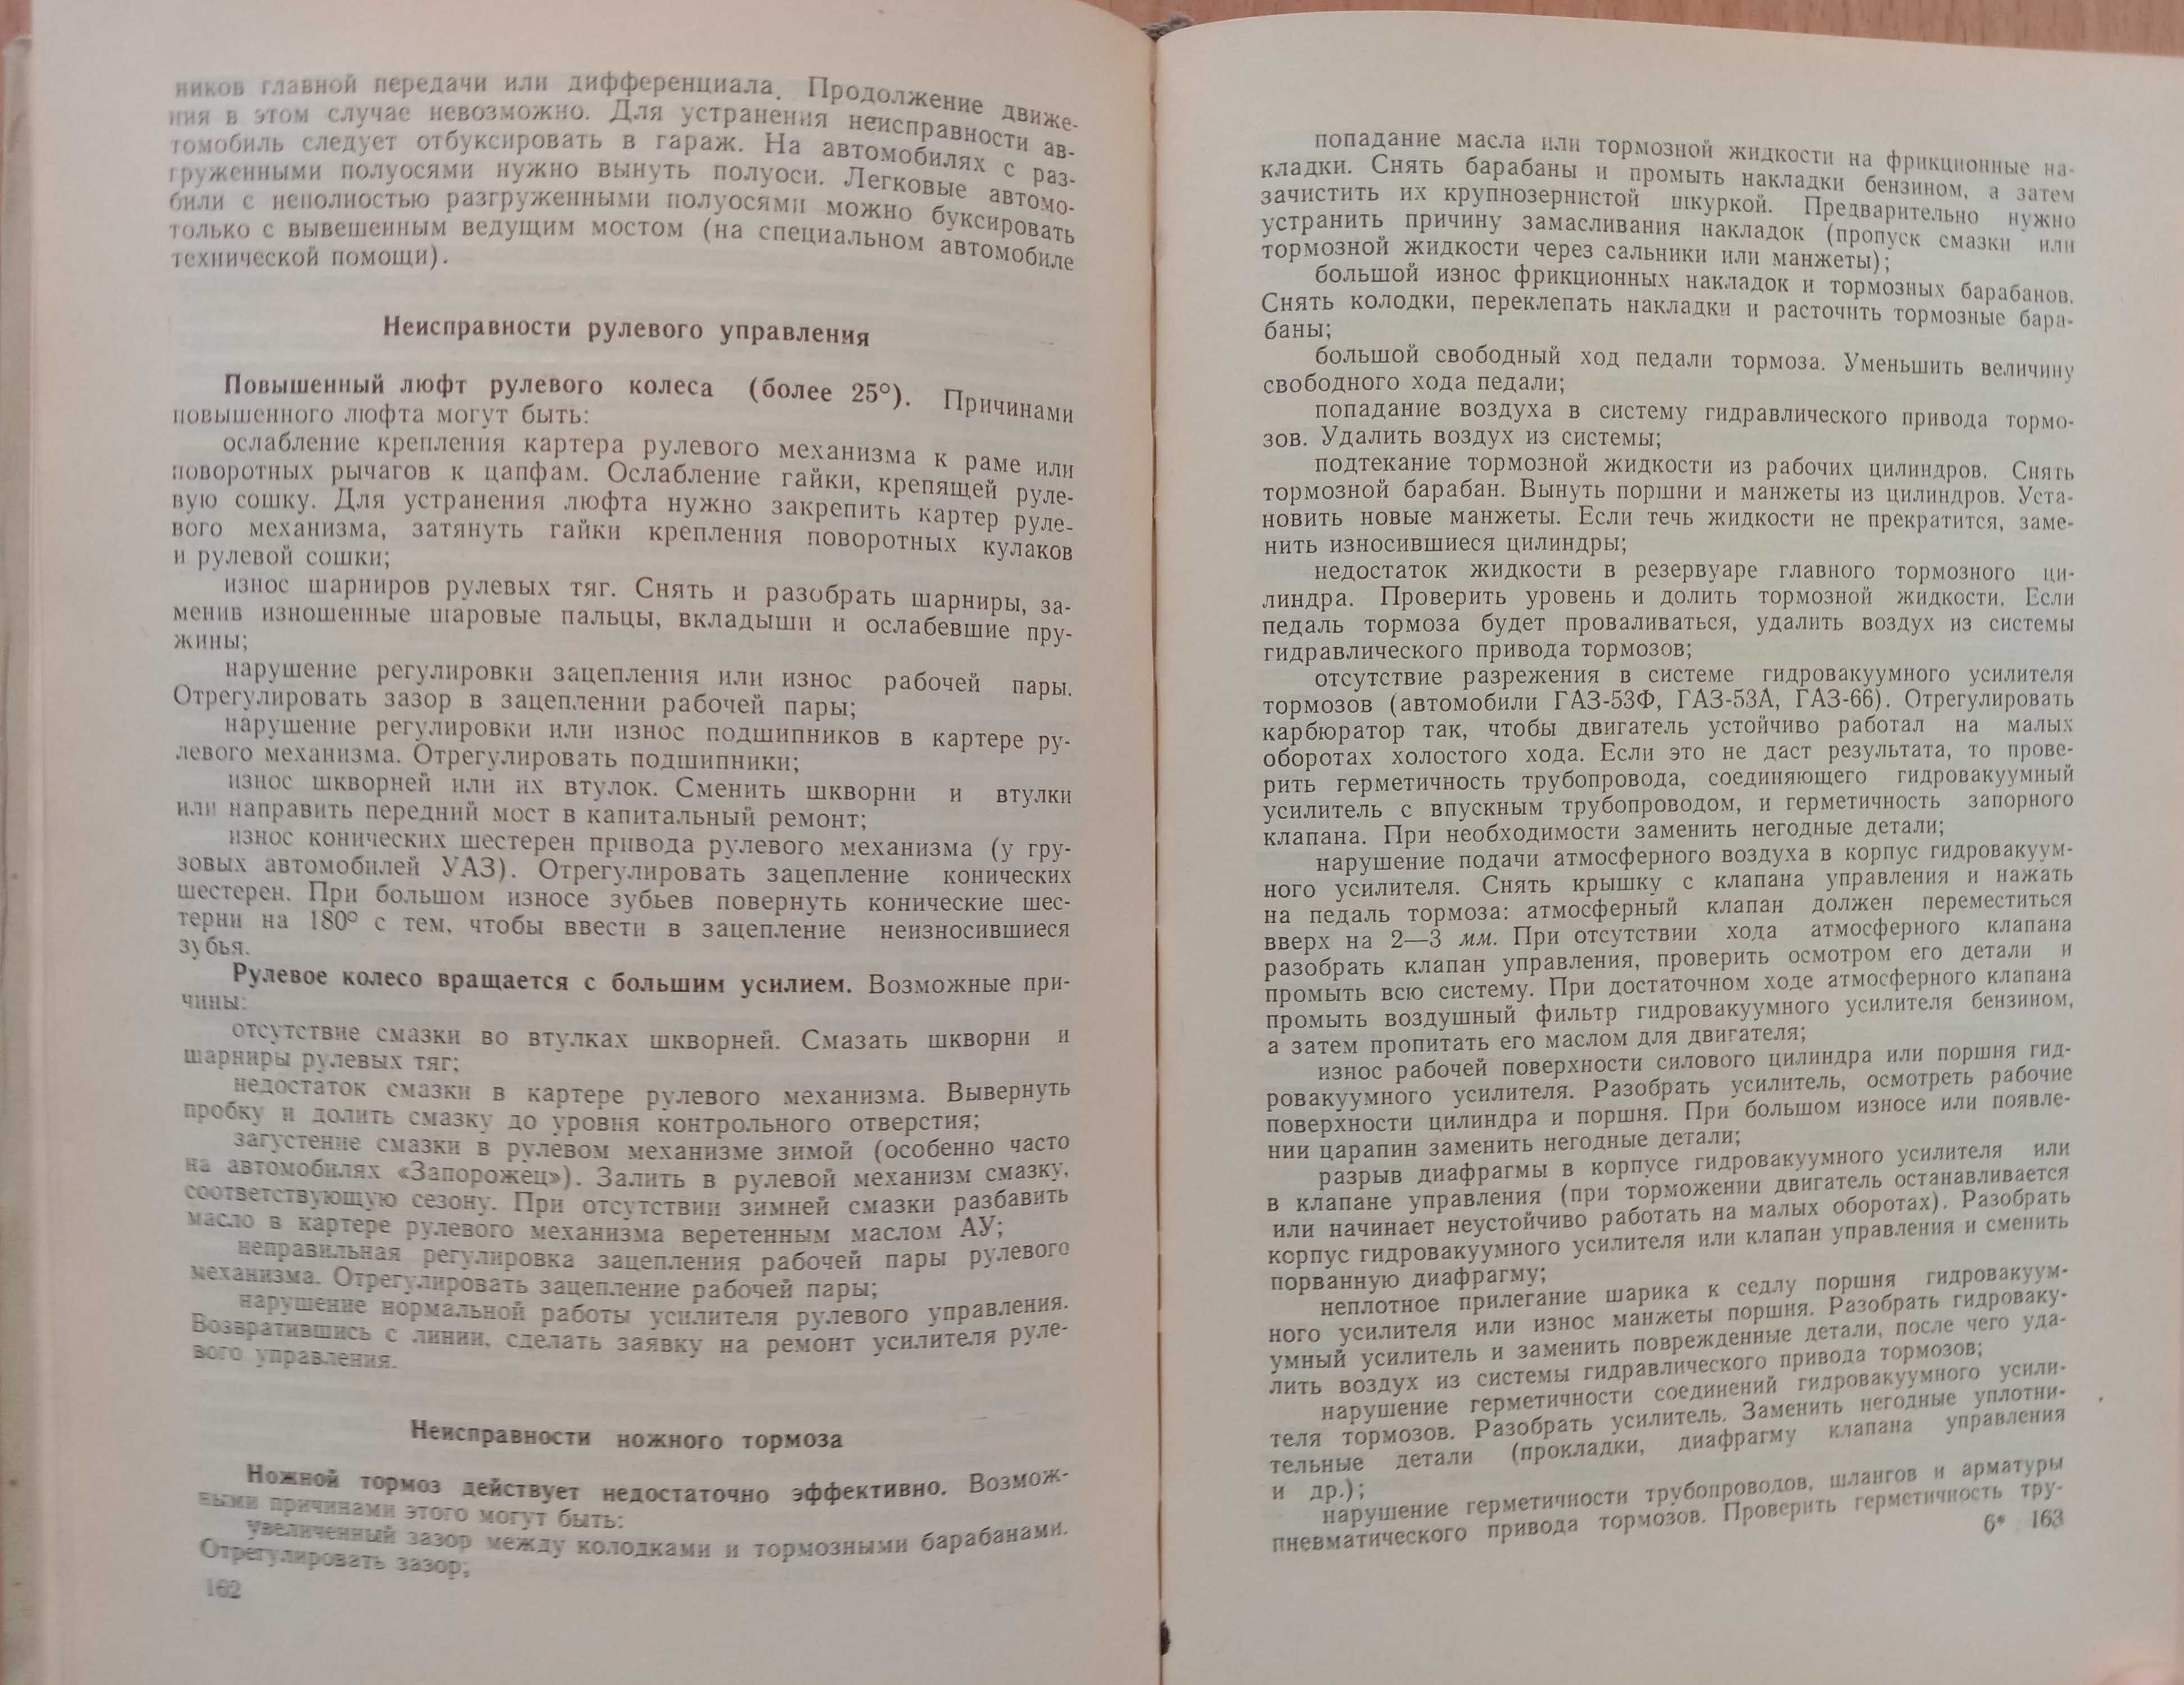 Книга «Справочник ВОДИТЕЛЯ АВТОМОБИЛЯ» Авторы Милушкин, Плеханов. 1968